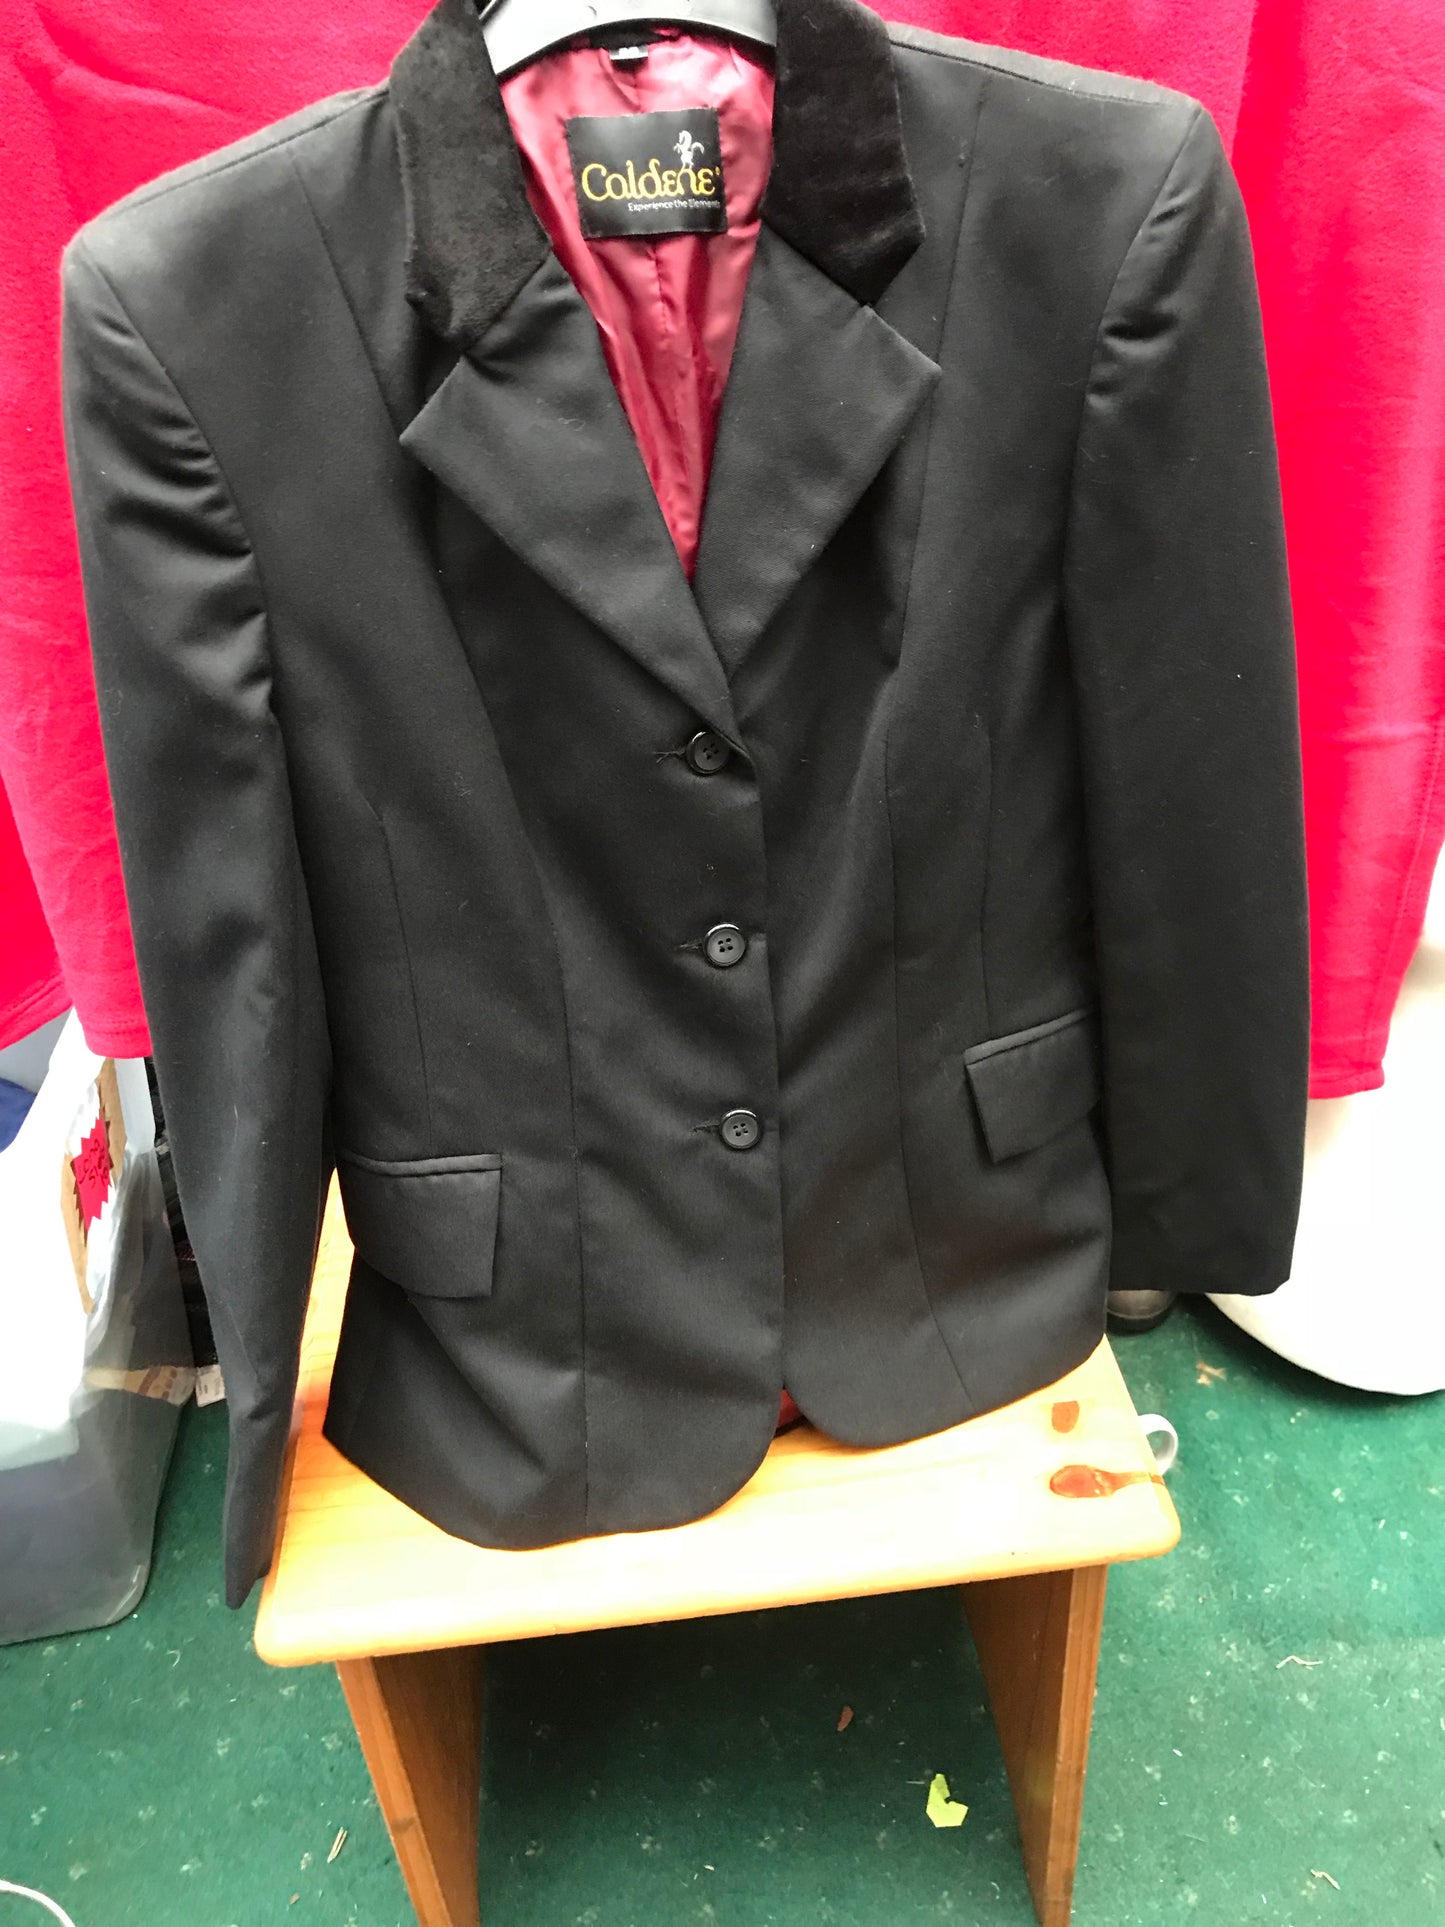 NEW Caldene black showing/competitions jacket size uk12 (36) FREE POSTAGE 🔵